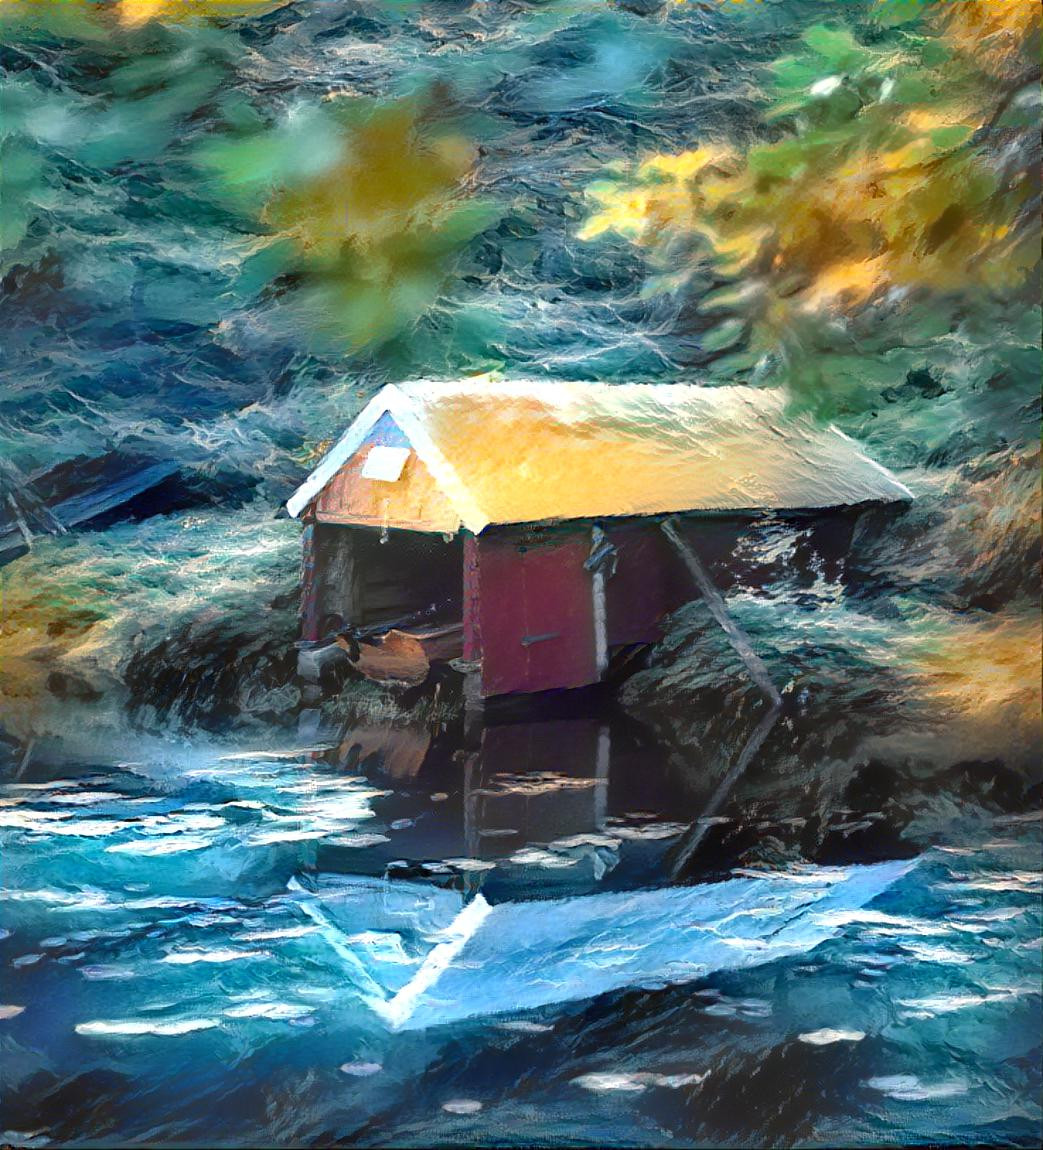 Boathouse on the lake